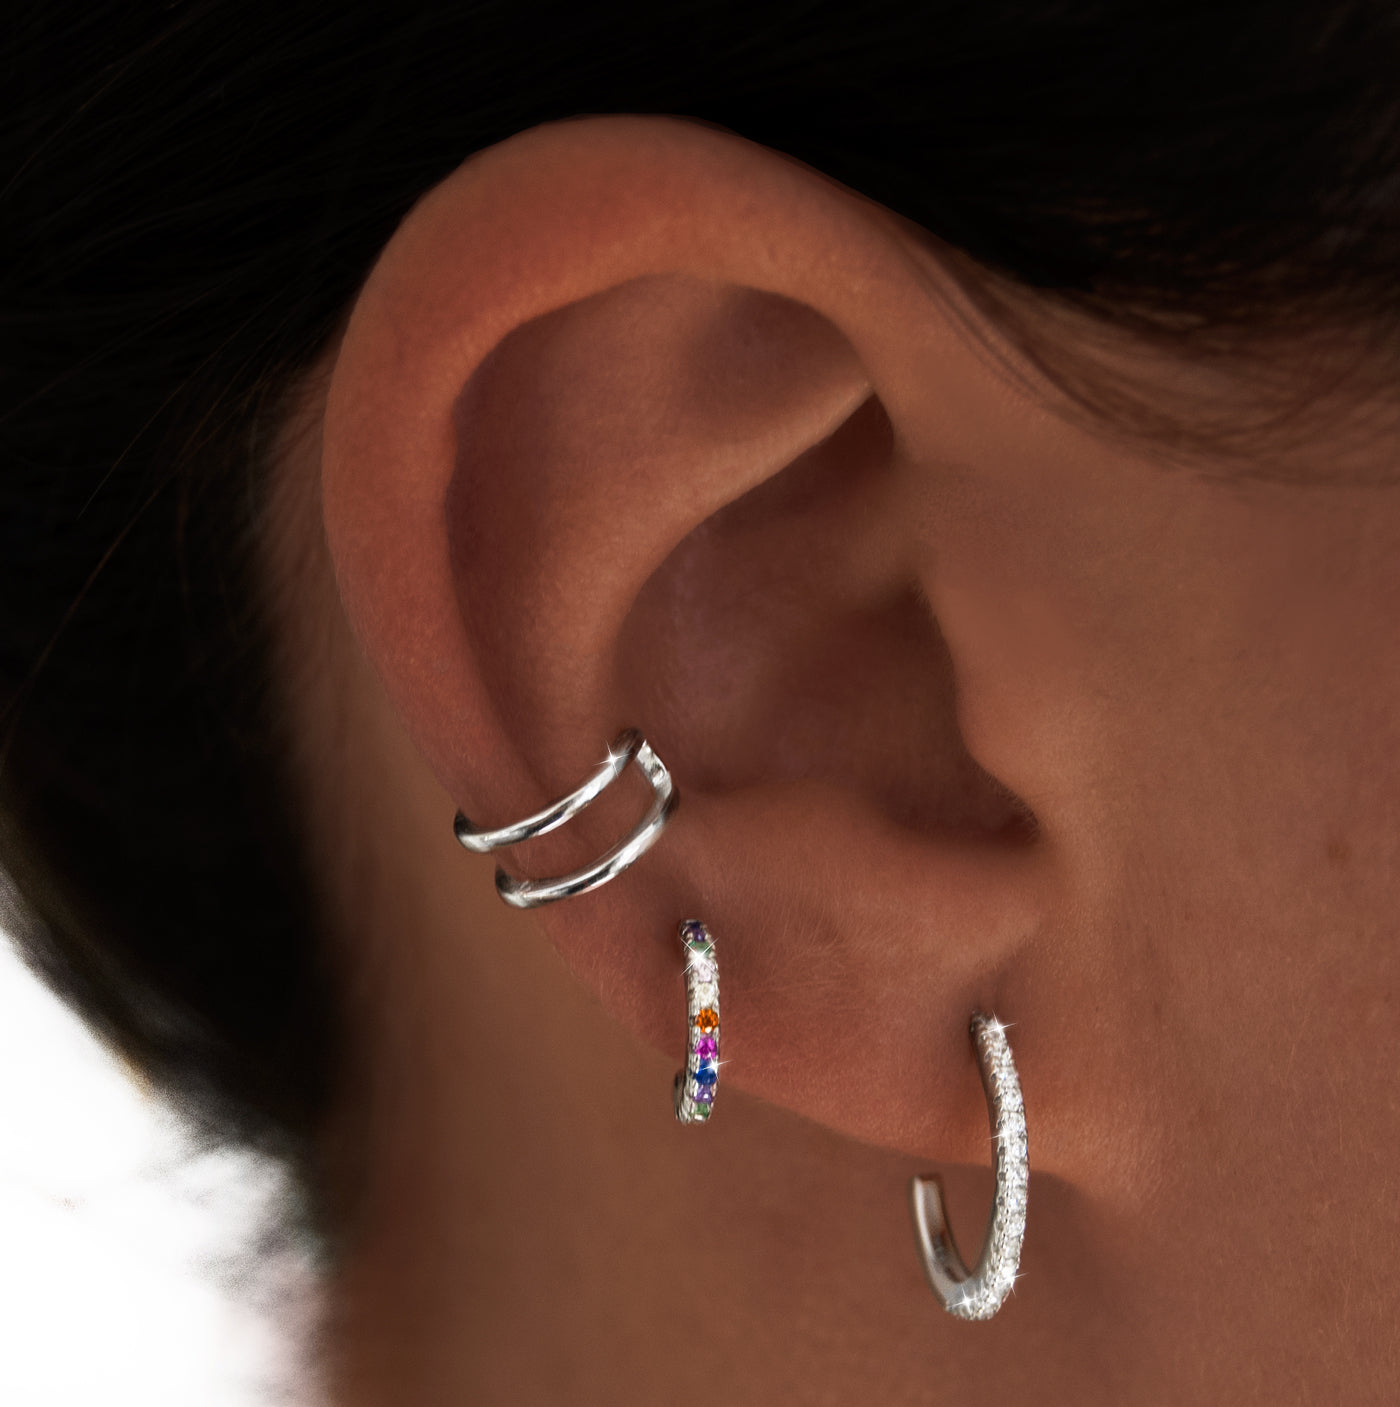 Pendientes Rainbow Plata con los Pendientes Diamonds Aro L Plata y el Ear Cuff Double Ring Plata